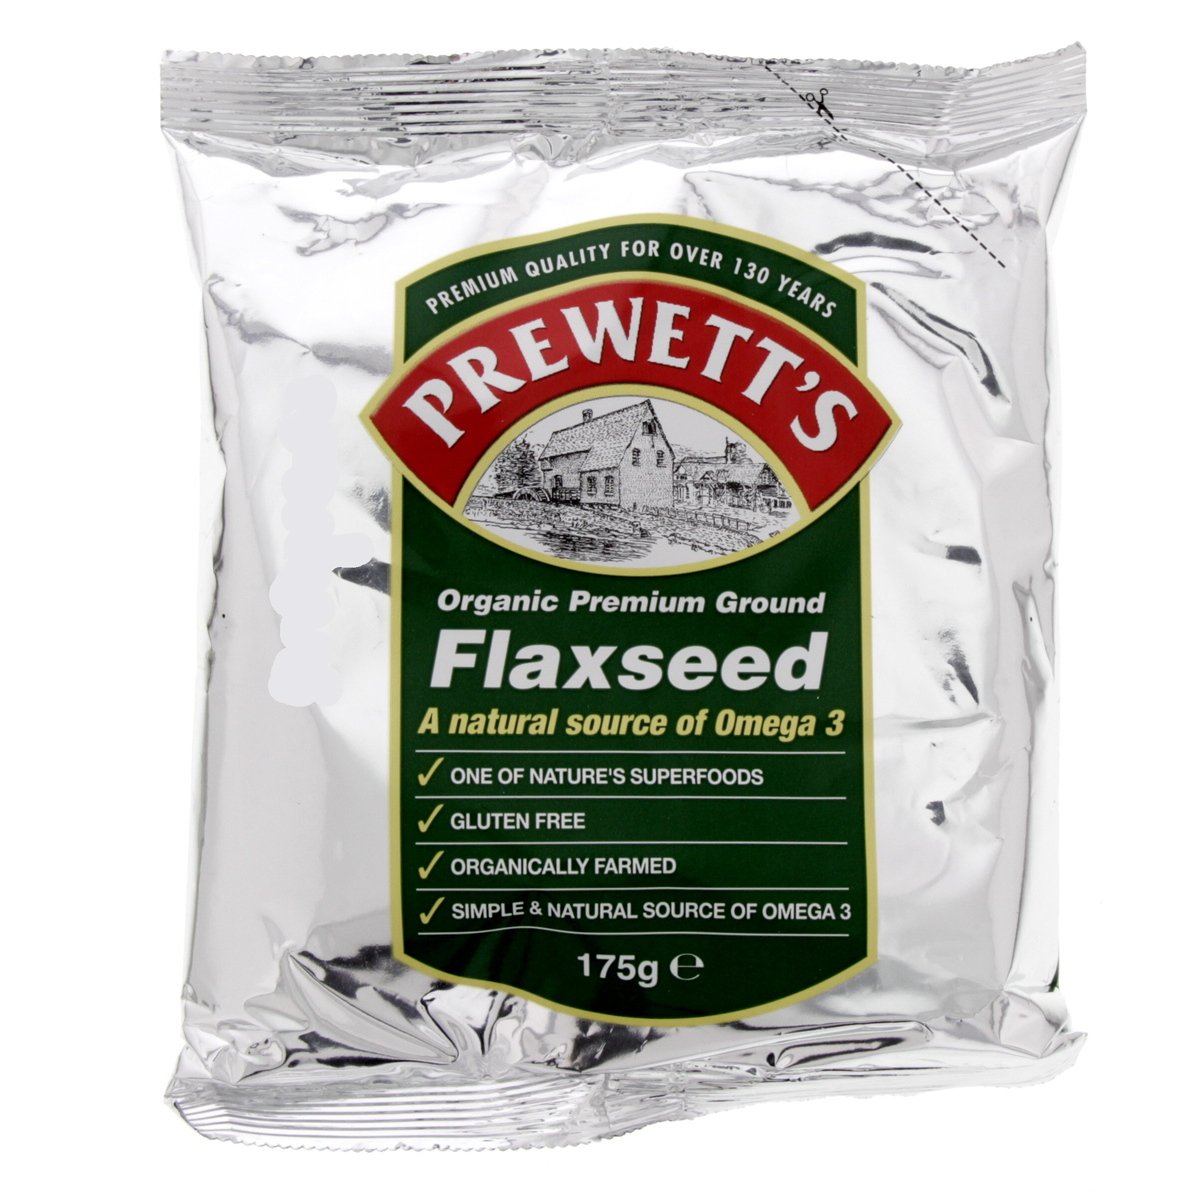 Prewetts Organic Premium Ground Flaxseed 175g